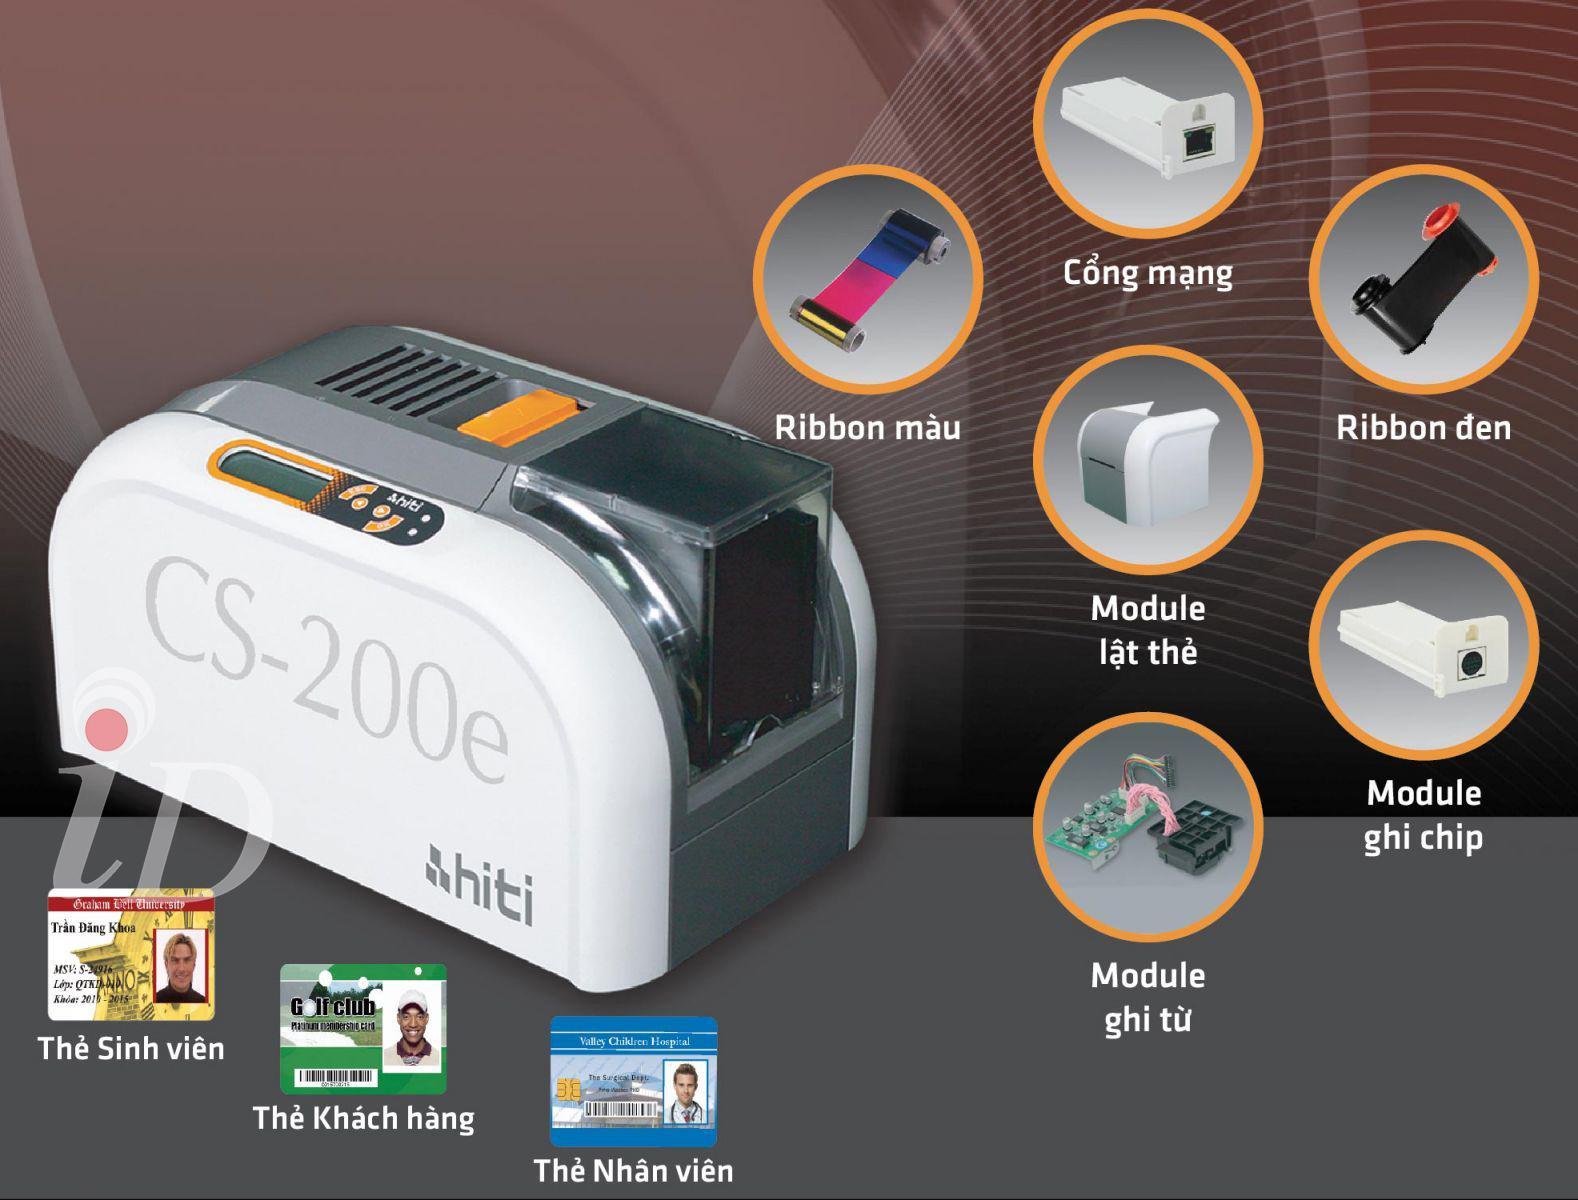 Namson SmartID cung cấp máy in thẻ sinh viên Hiti CS200e chính hãng, mang đến giải pháp vượt trội cho nhu cầu in thẻ tầm trung